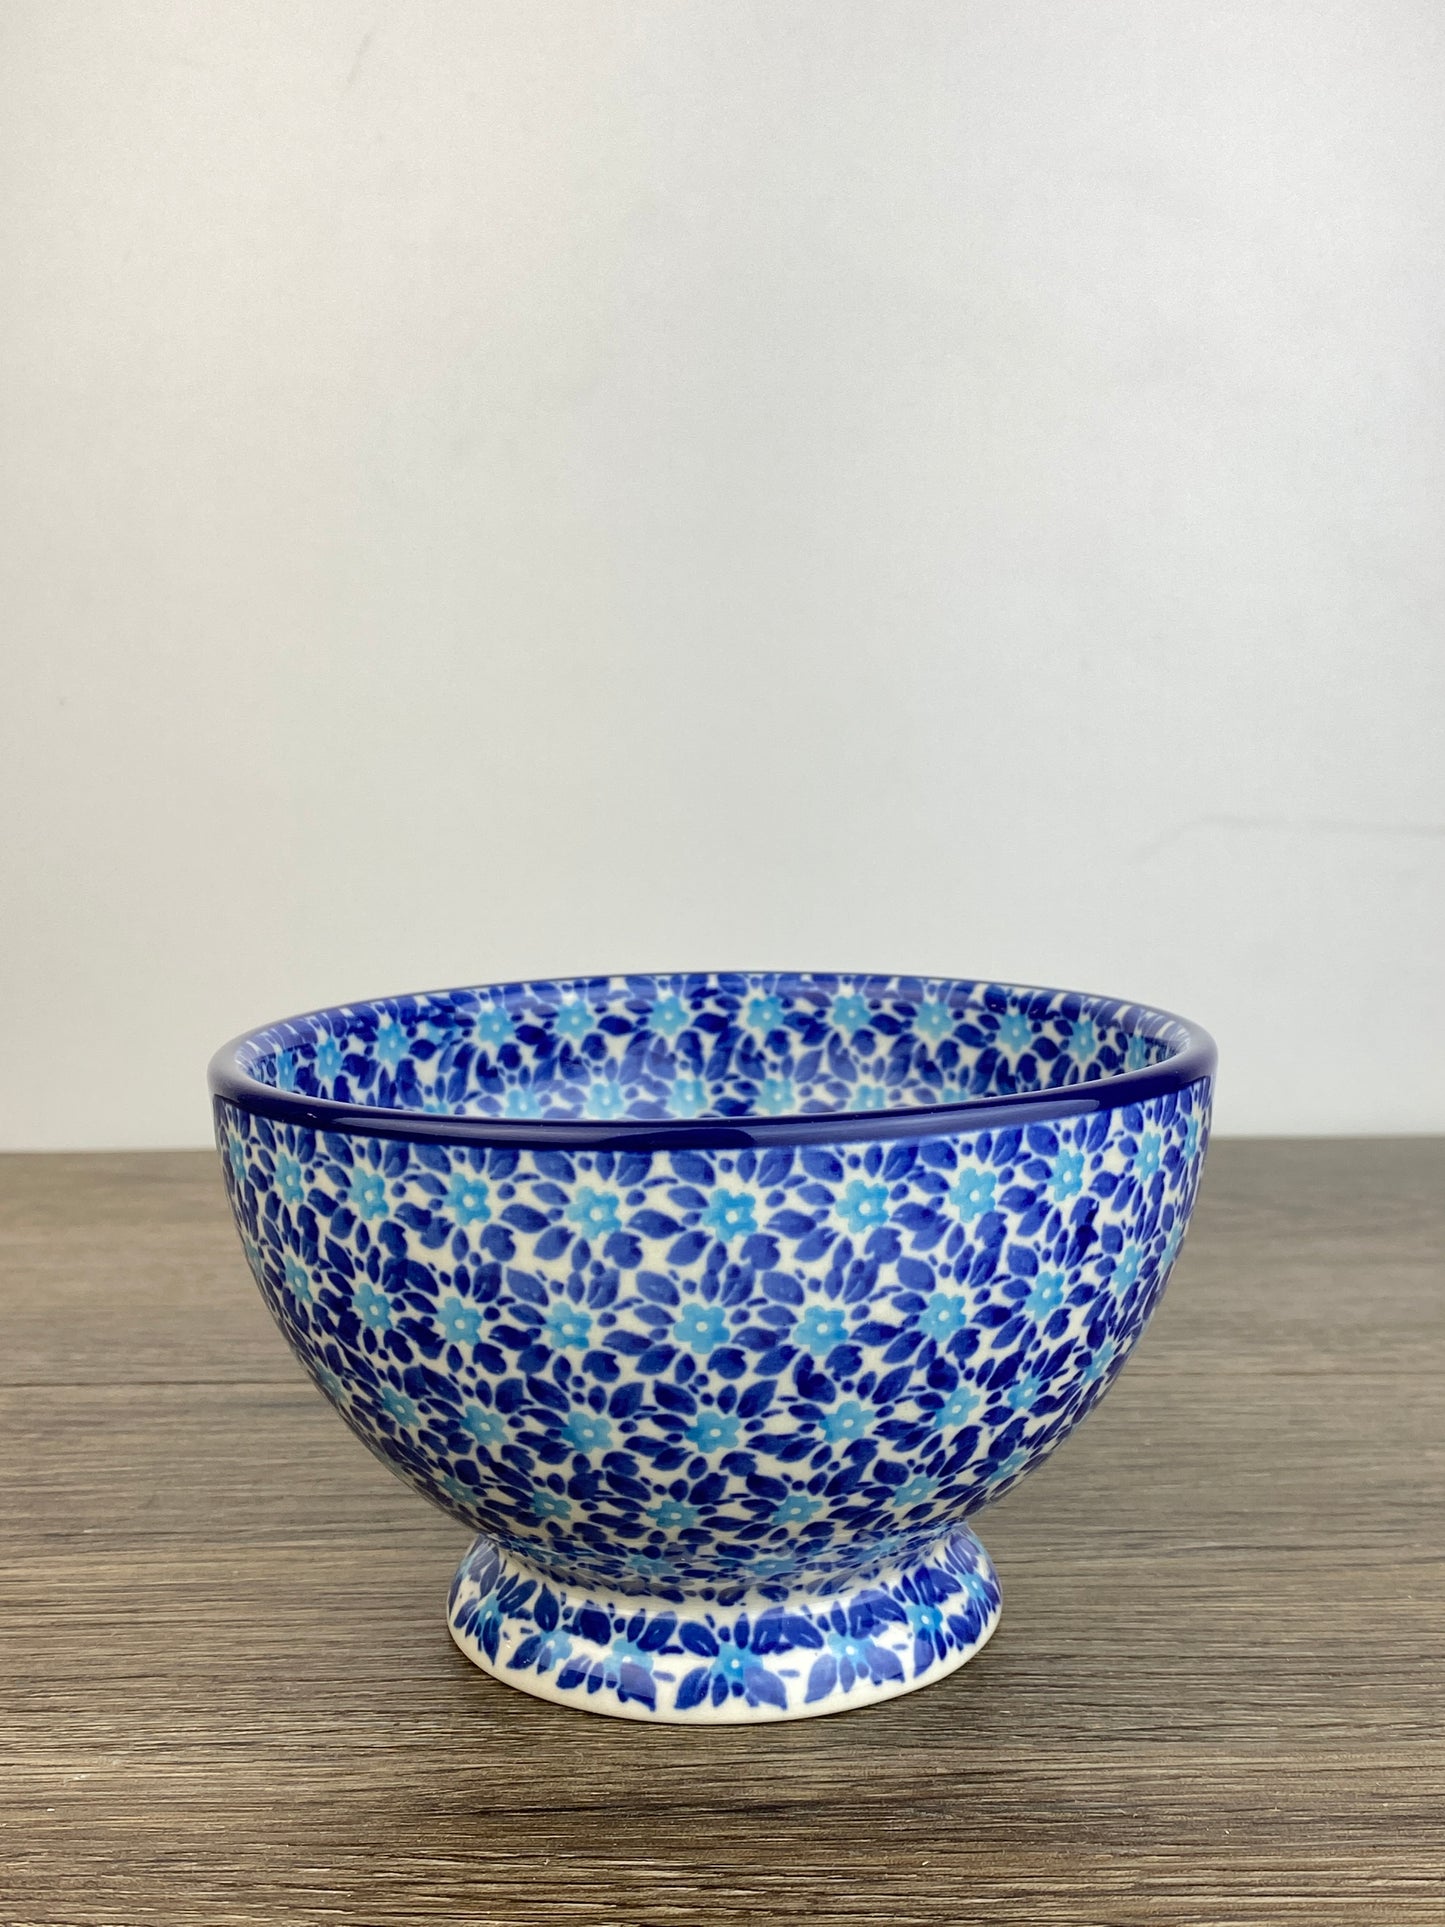 SALE Pedestal Bowl - Shape 206 - Pattern 2394